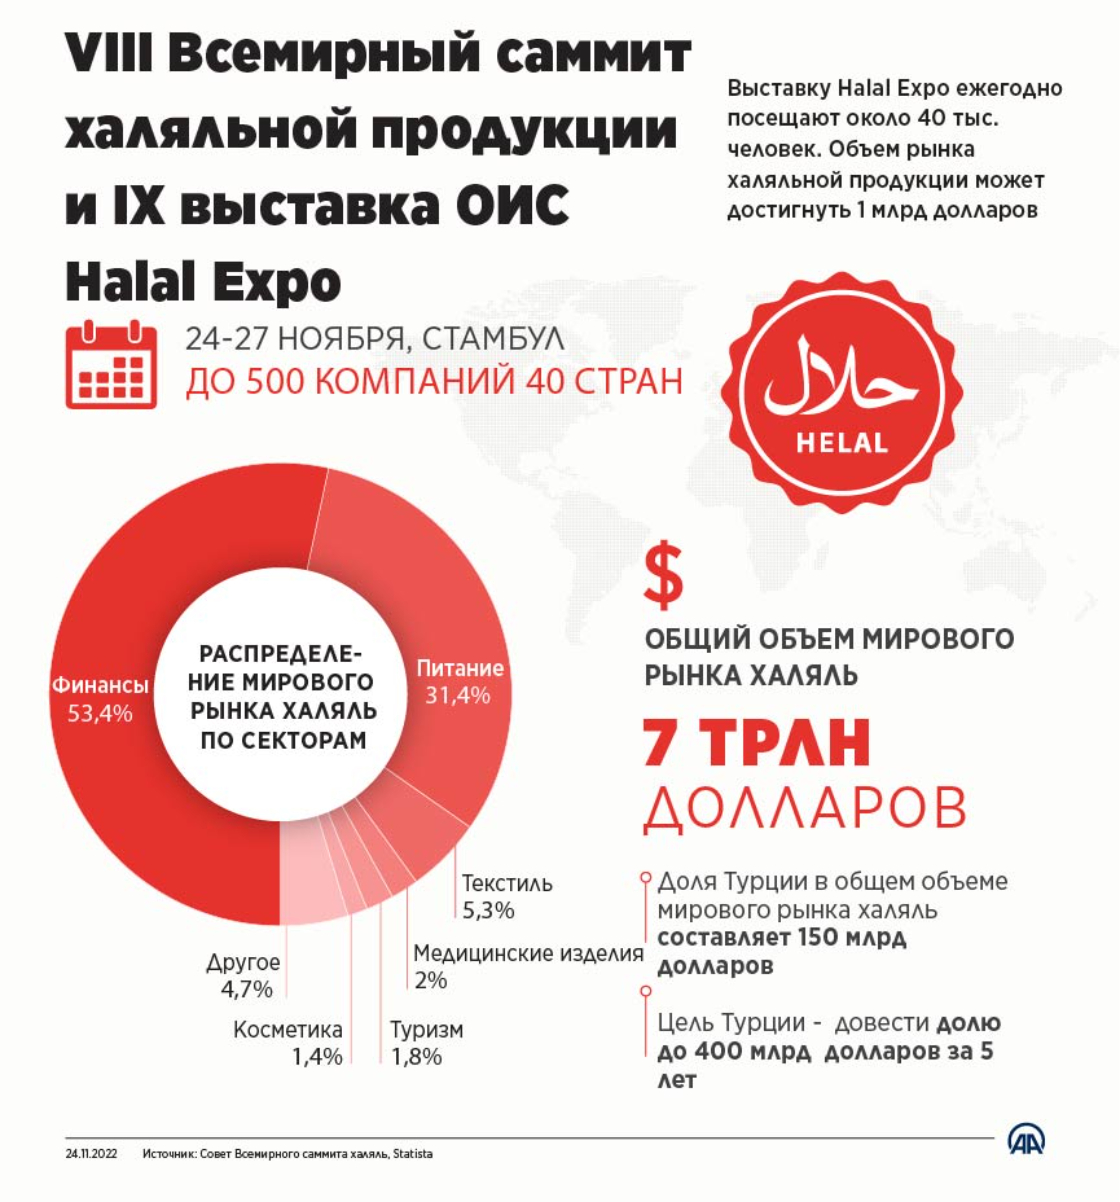 VIII Всемирный саммит халяльной продукции и IX выставка ОИС Halal Expo 